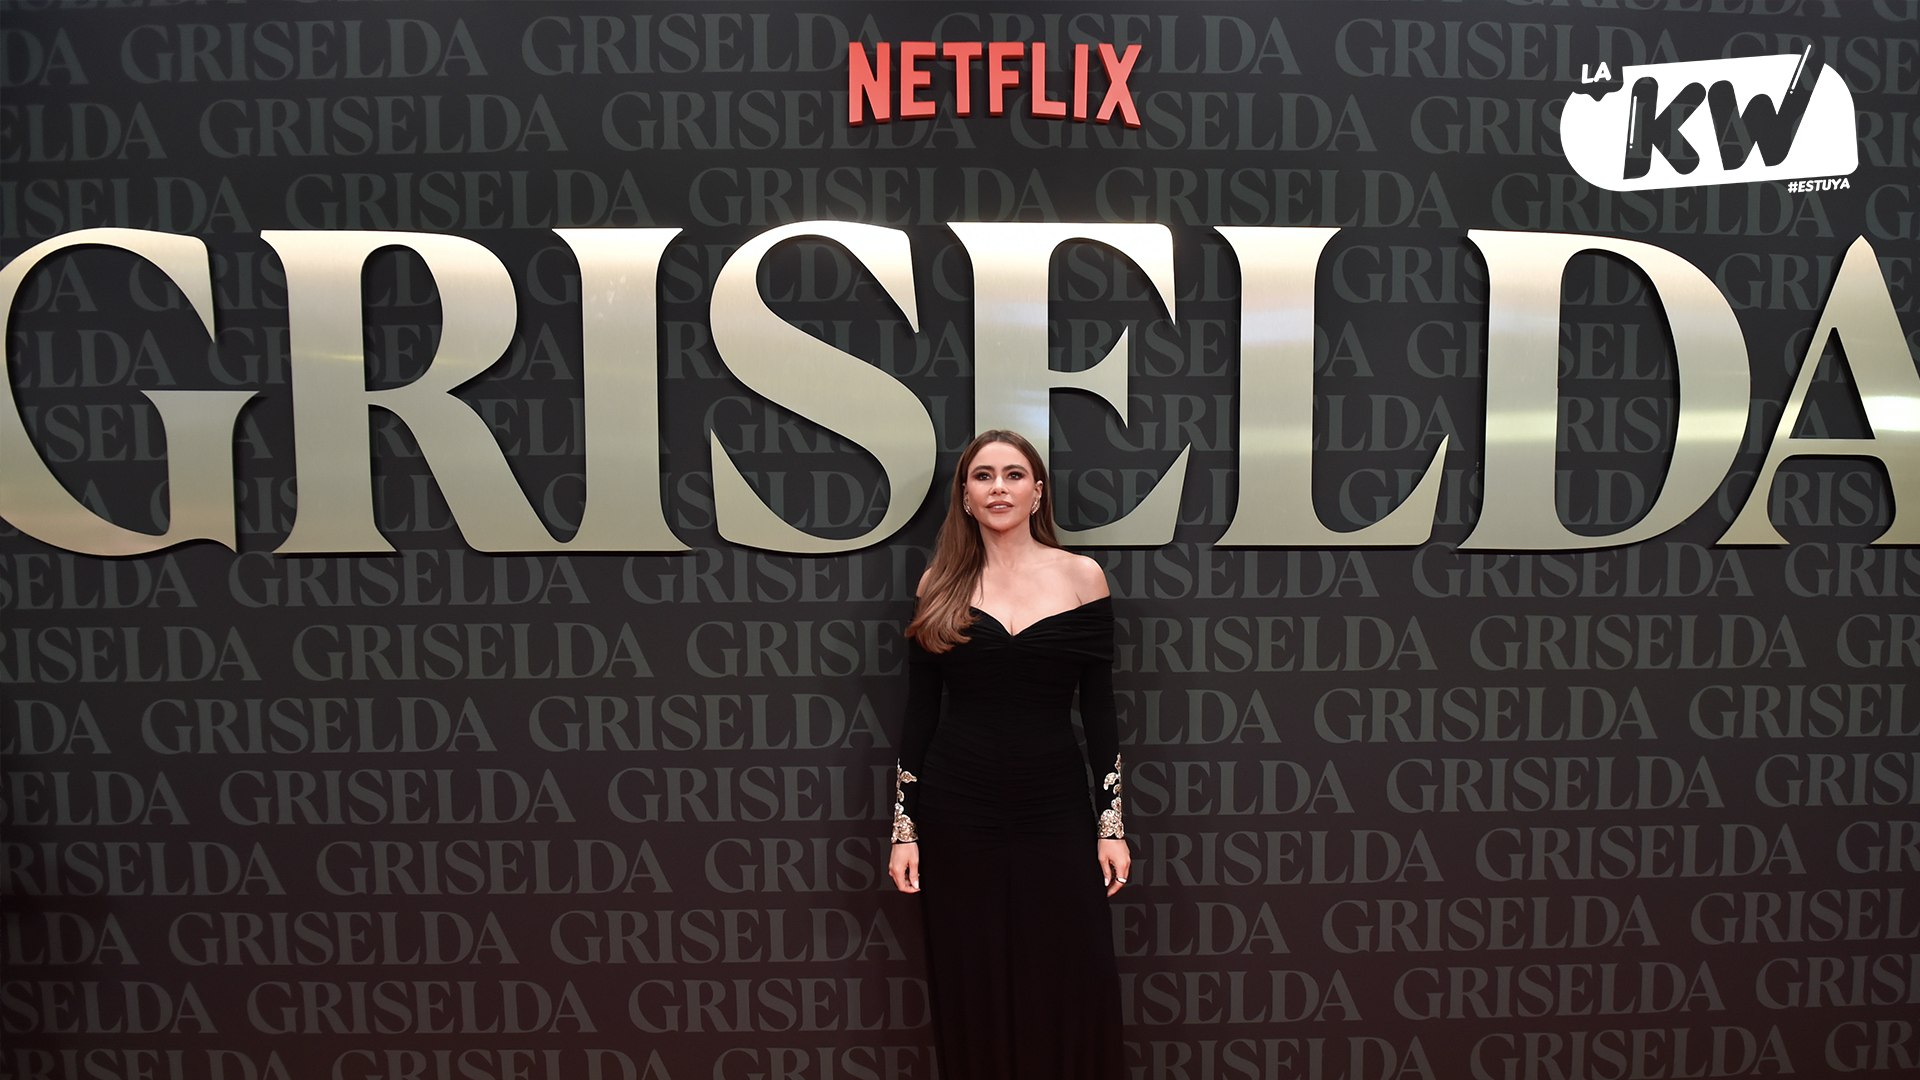 Sofía Vergara deslumbra en la gran premiere de “Griselda”: una noche inolvidable de estilo y emoción